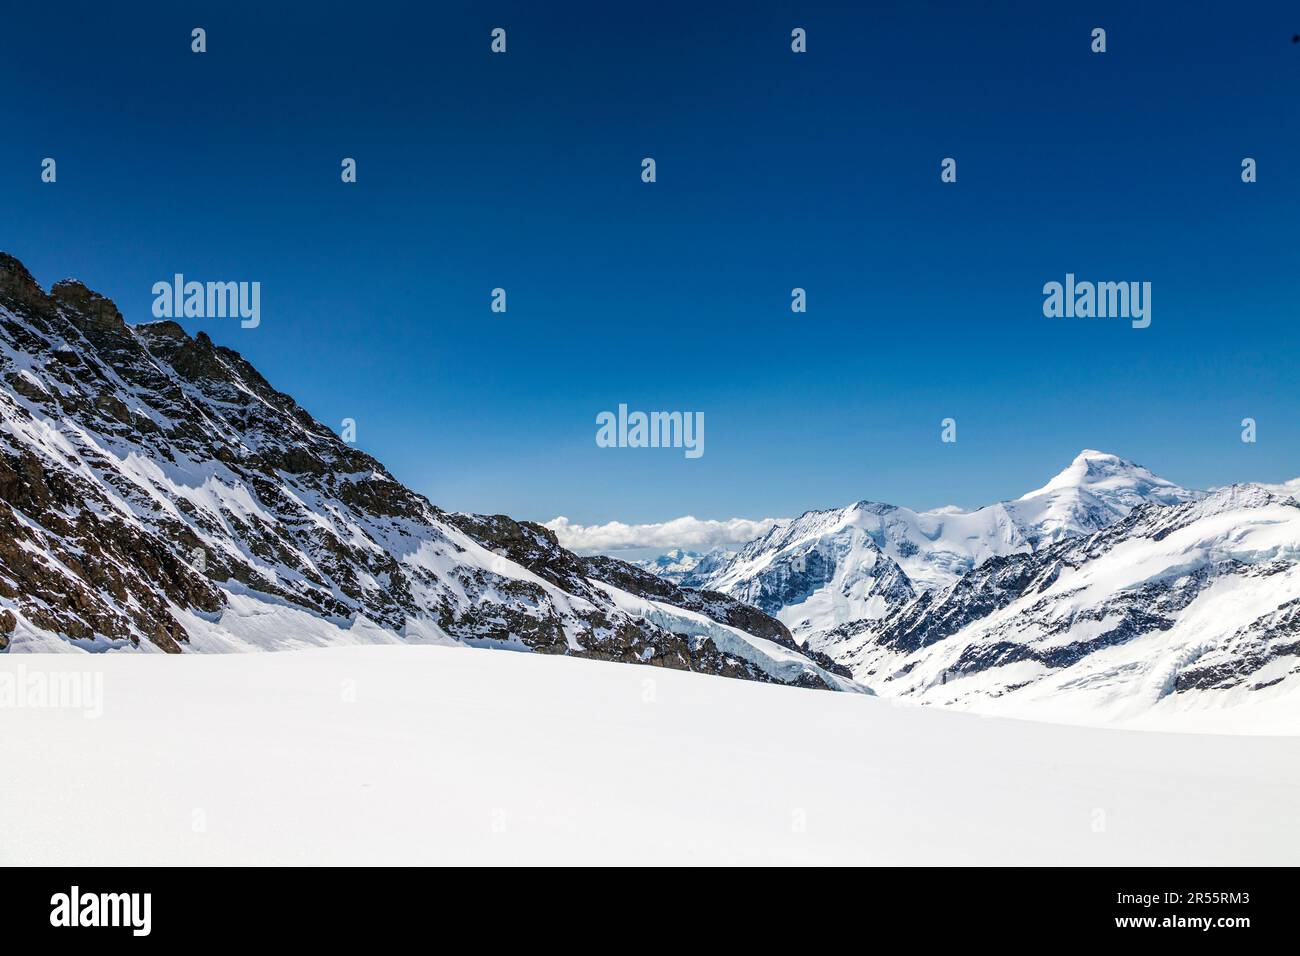 Blick auf verschneite Gipfel entlang des Wanderwegs vom Jungfrau Gipfel bis zum Mönchsjoch Hut, Trugberg auf der linken Seite, Schweizer Alpen, Schweiz Stockfoto